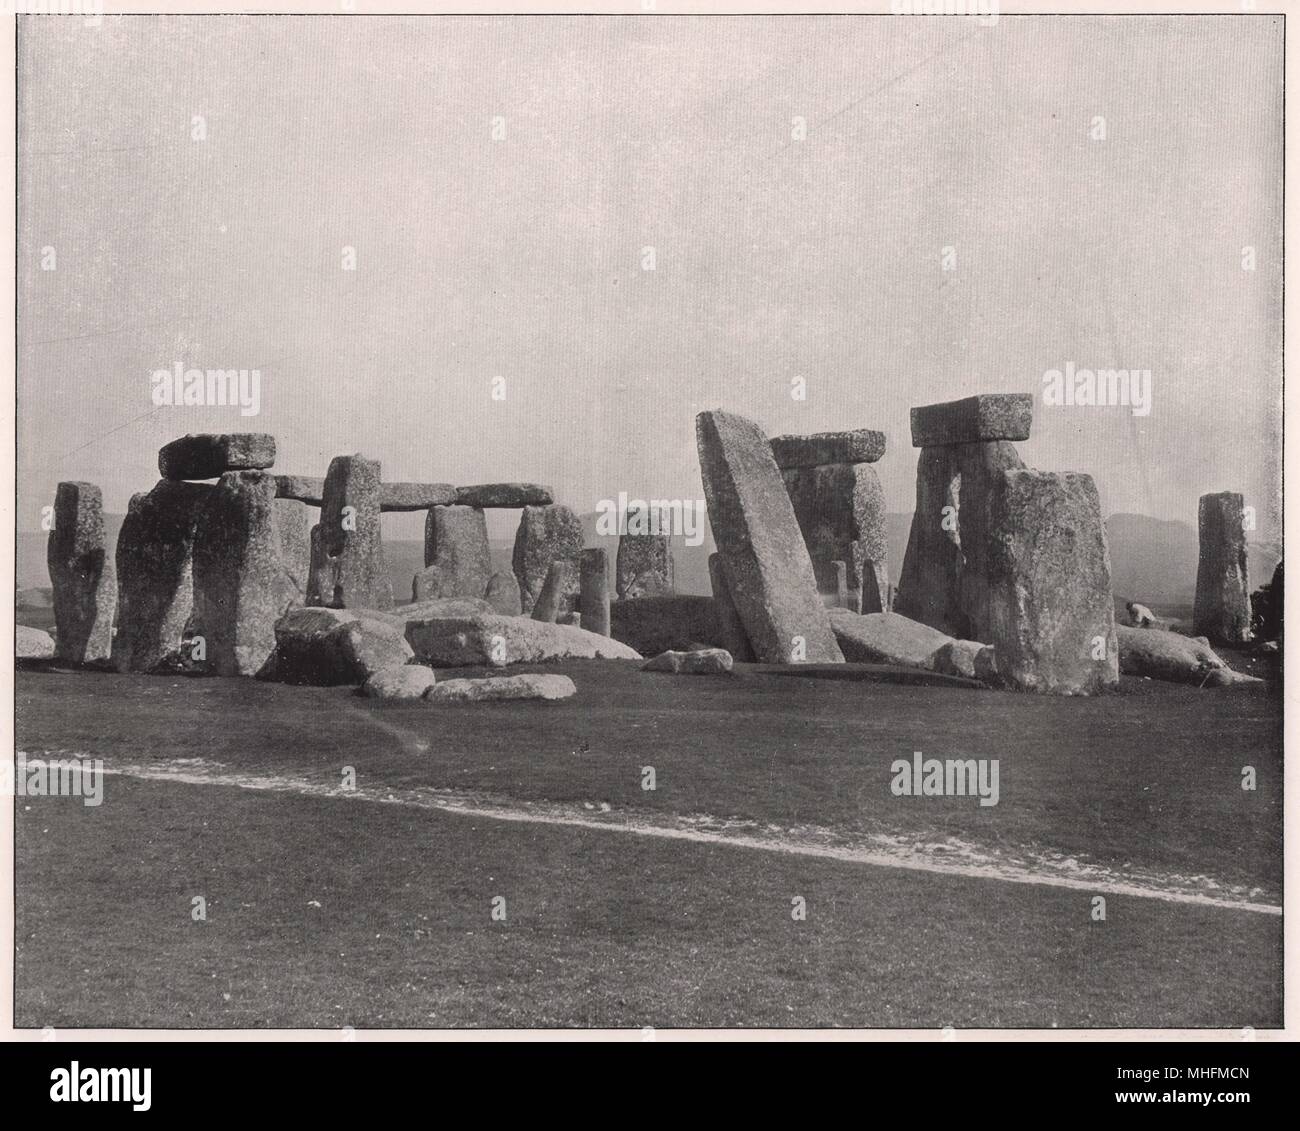 Stonehenge, die wunderbare Monument der Antike, über die so viel gesagt worden, aber so wenig bekannt, liegt auf… Stockfoto